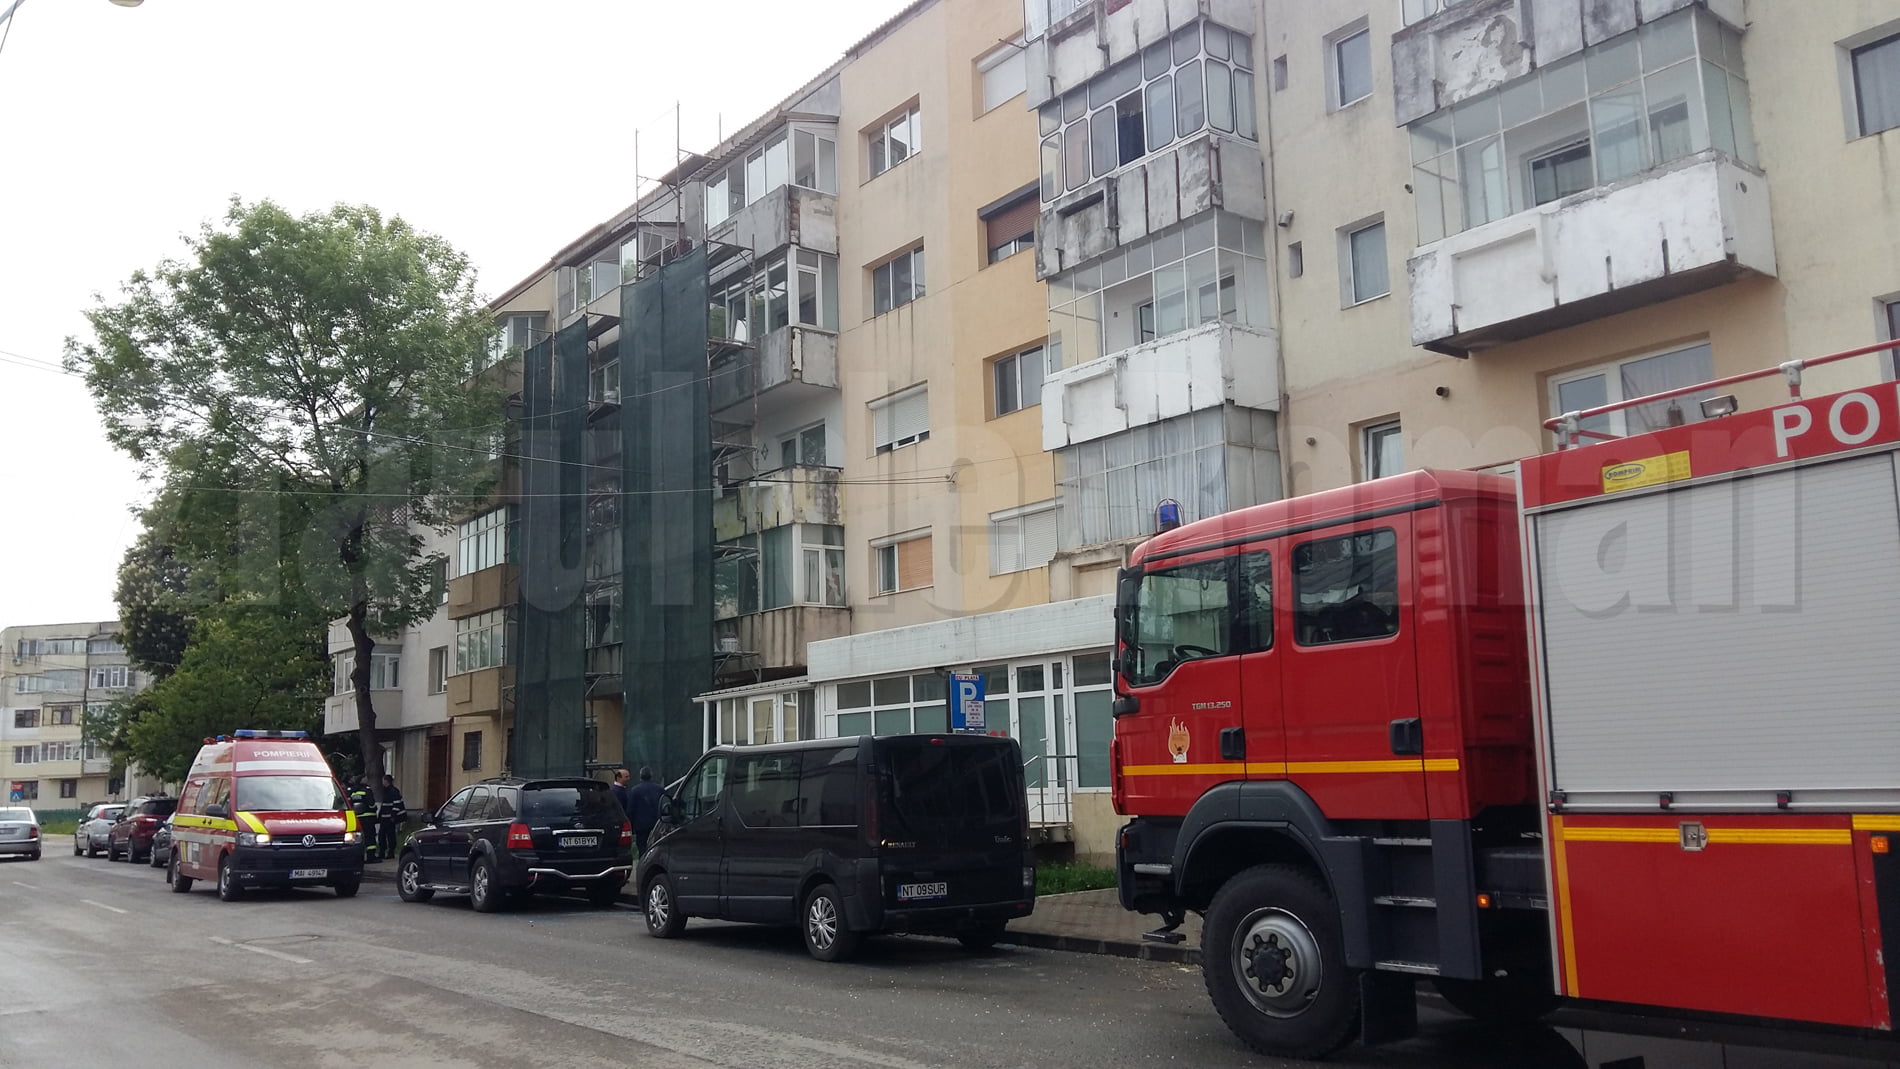 Intervenție a pompierilor pentru deblocarea unei uși, pe strada Dobrogeanu Gherea